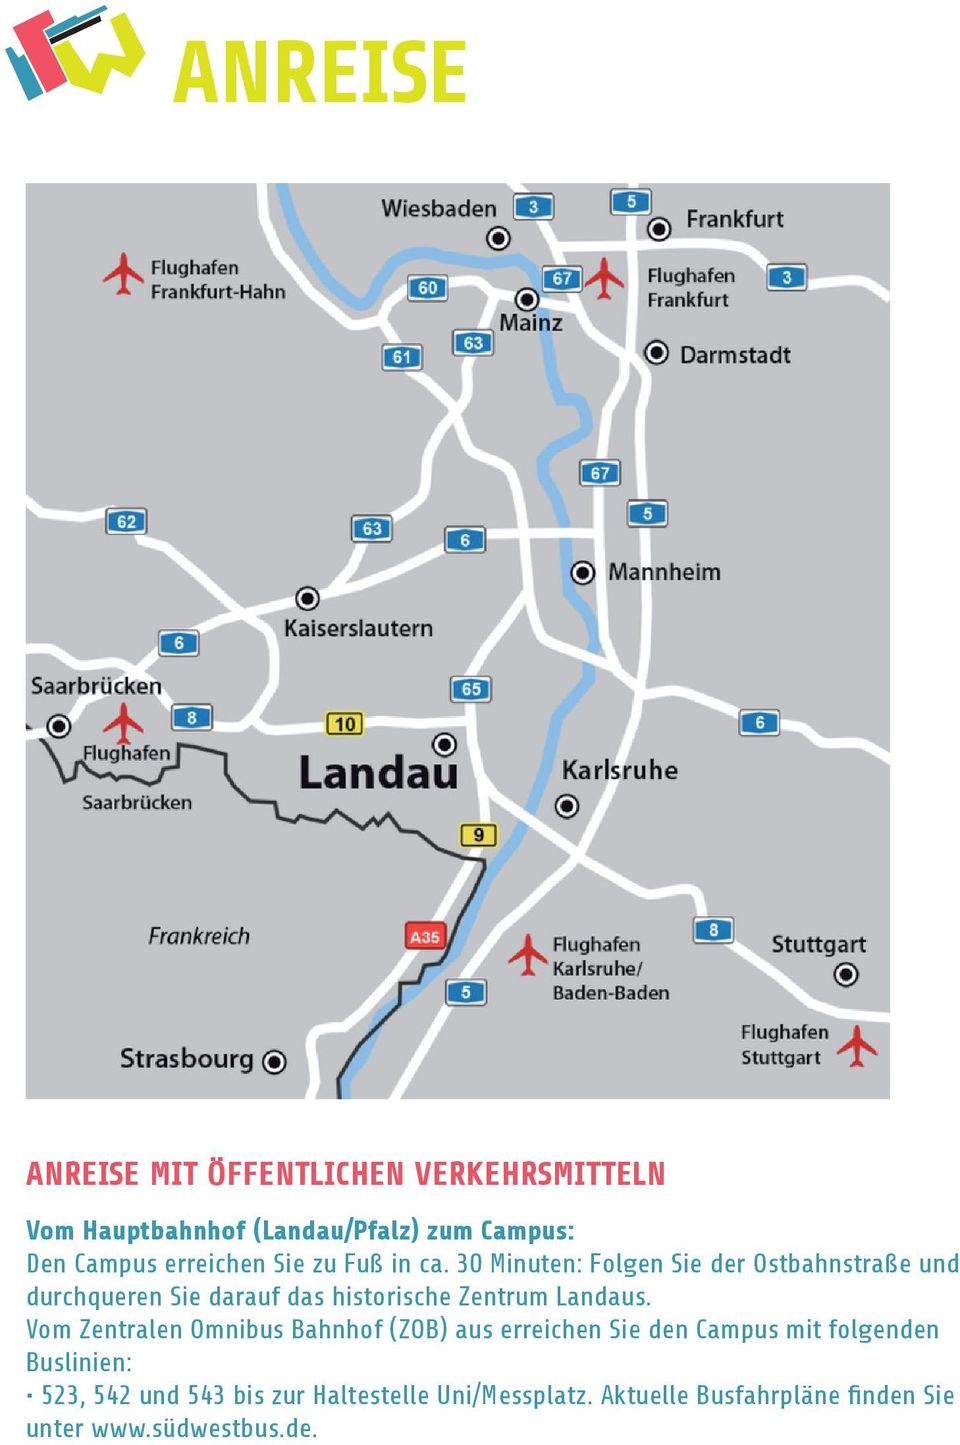 30 Minuten: Folgen Sie der Ostbahnstraße und durchqueren Sie darauf das historische Zentrum Landaus.